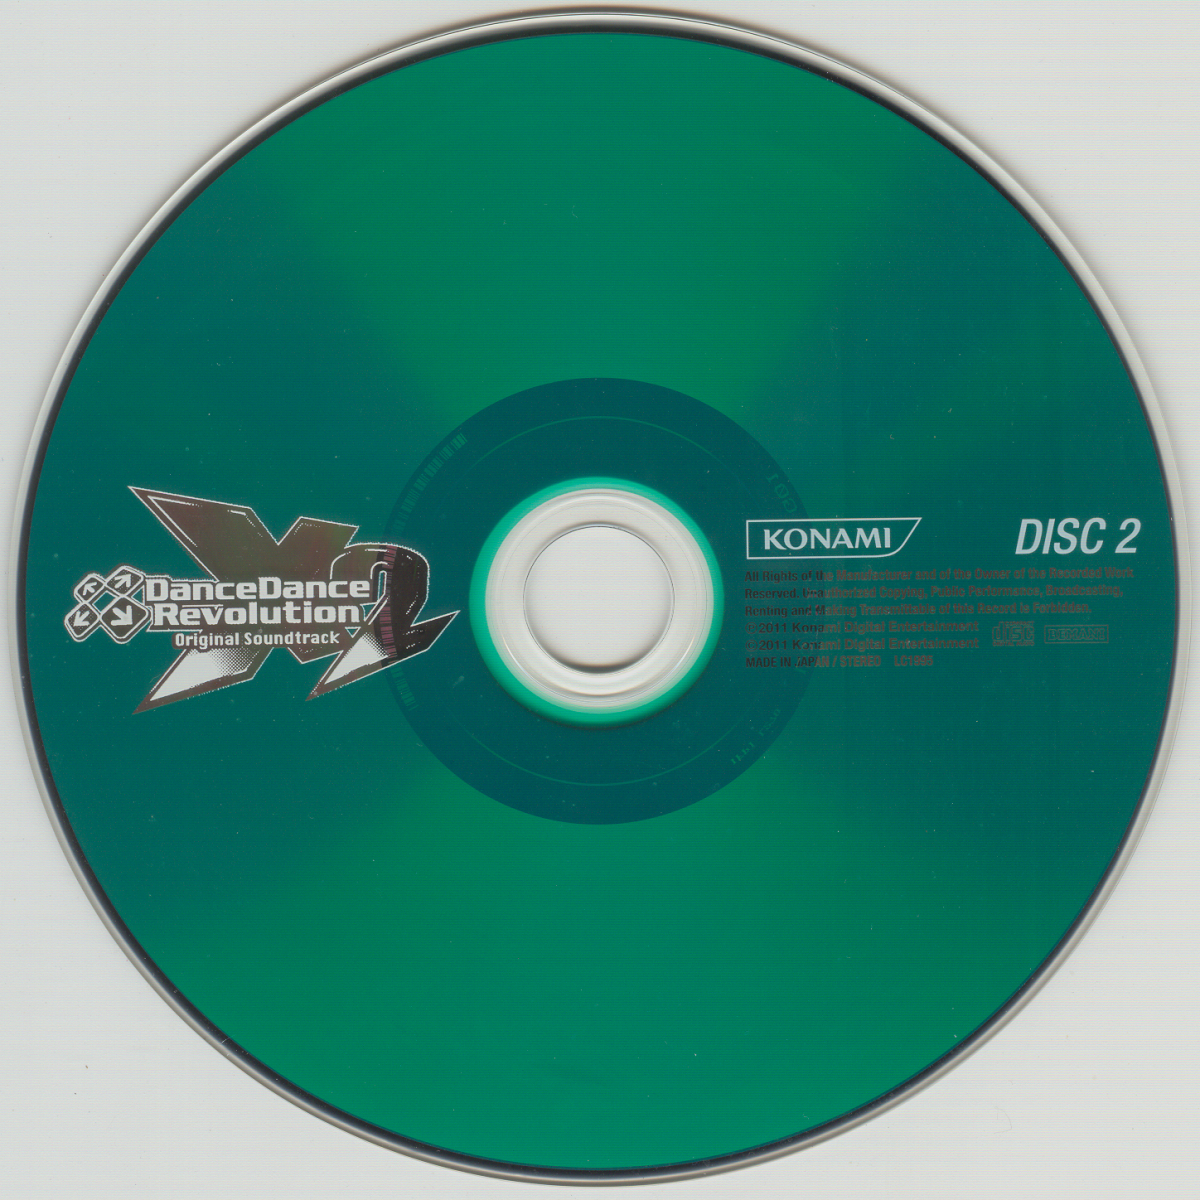 DanceDanceRevolution X2 Original Soundtrack (2011) MP3 - Download DanceDanceRevolution  X2 Original Soundtrack (2011) Soundtracks for FREE!